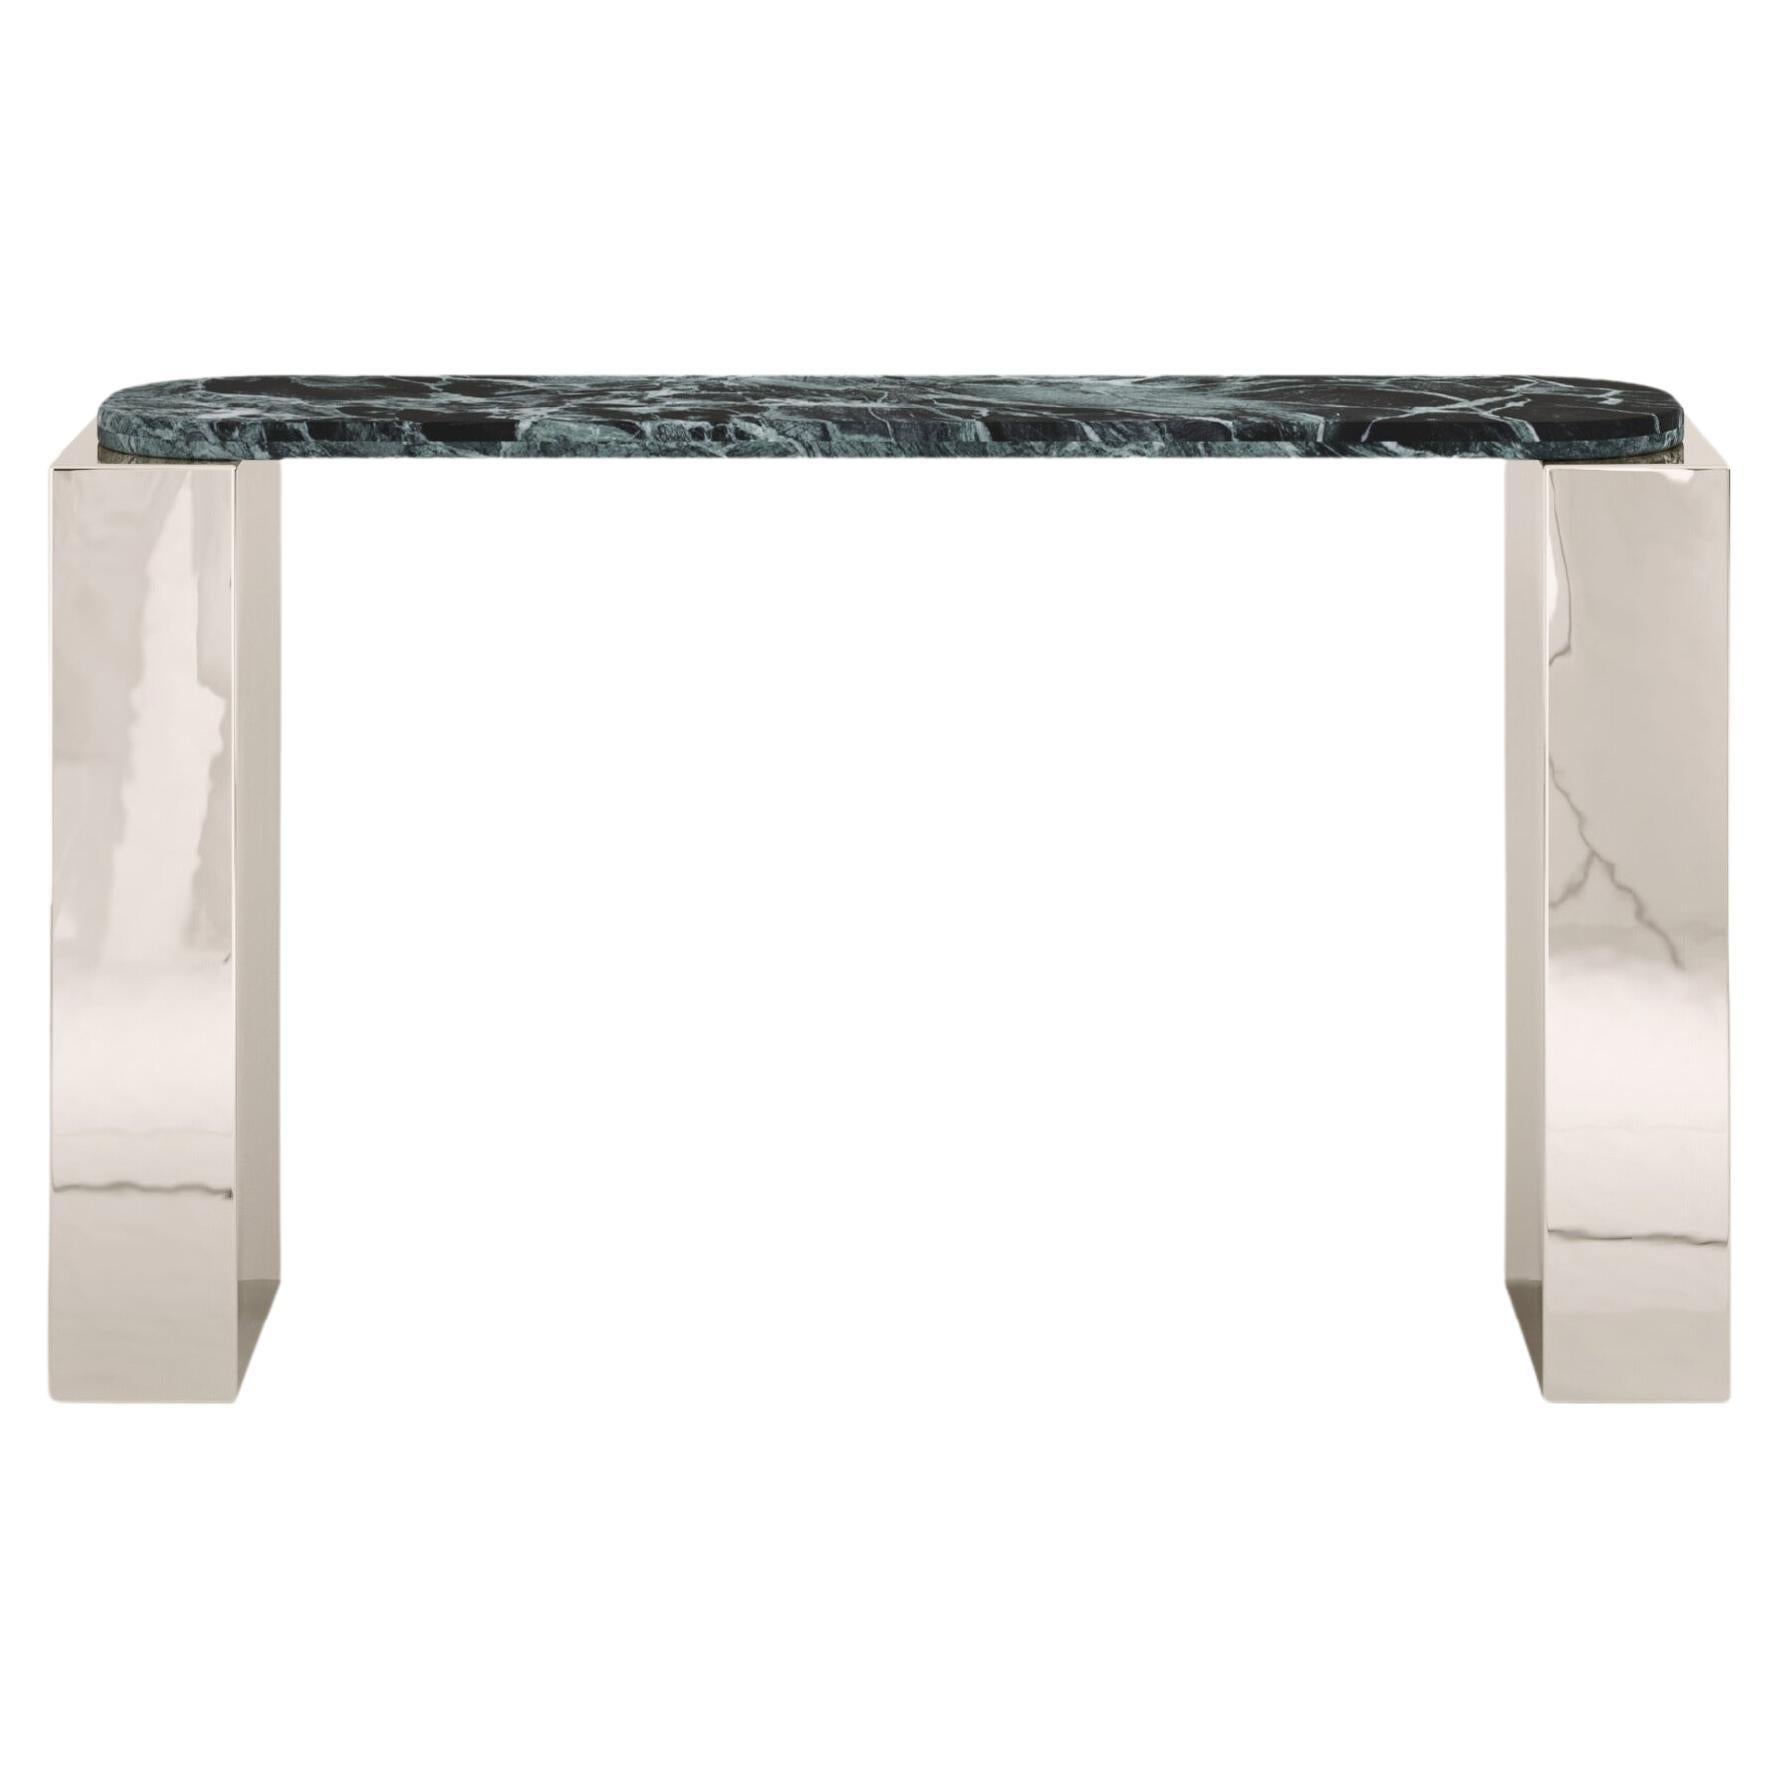 FORM(LA) Cubo Console Table 74”L x 17”W x 36”H Verde Alpi Marble & Chrome